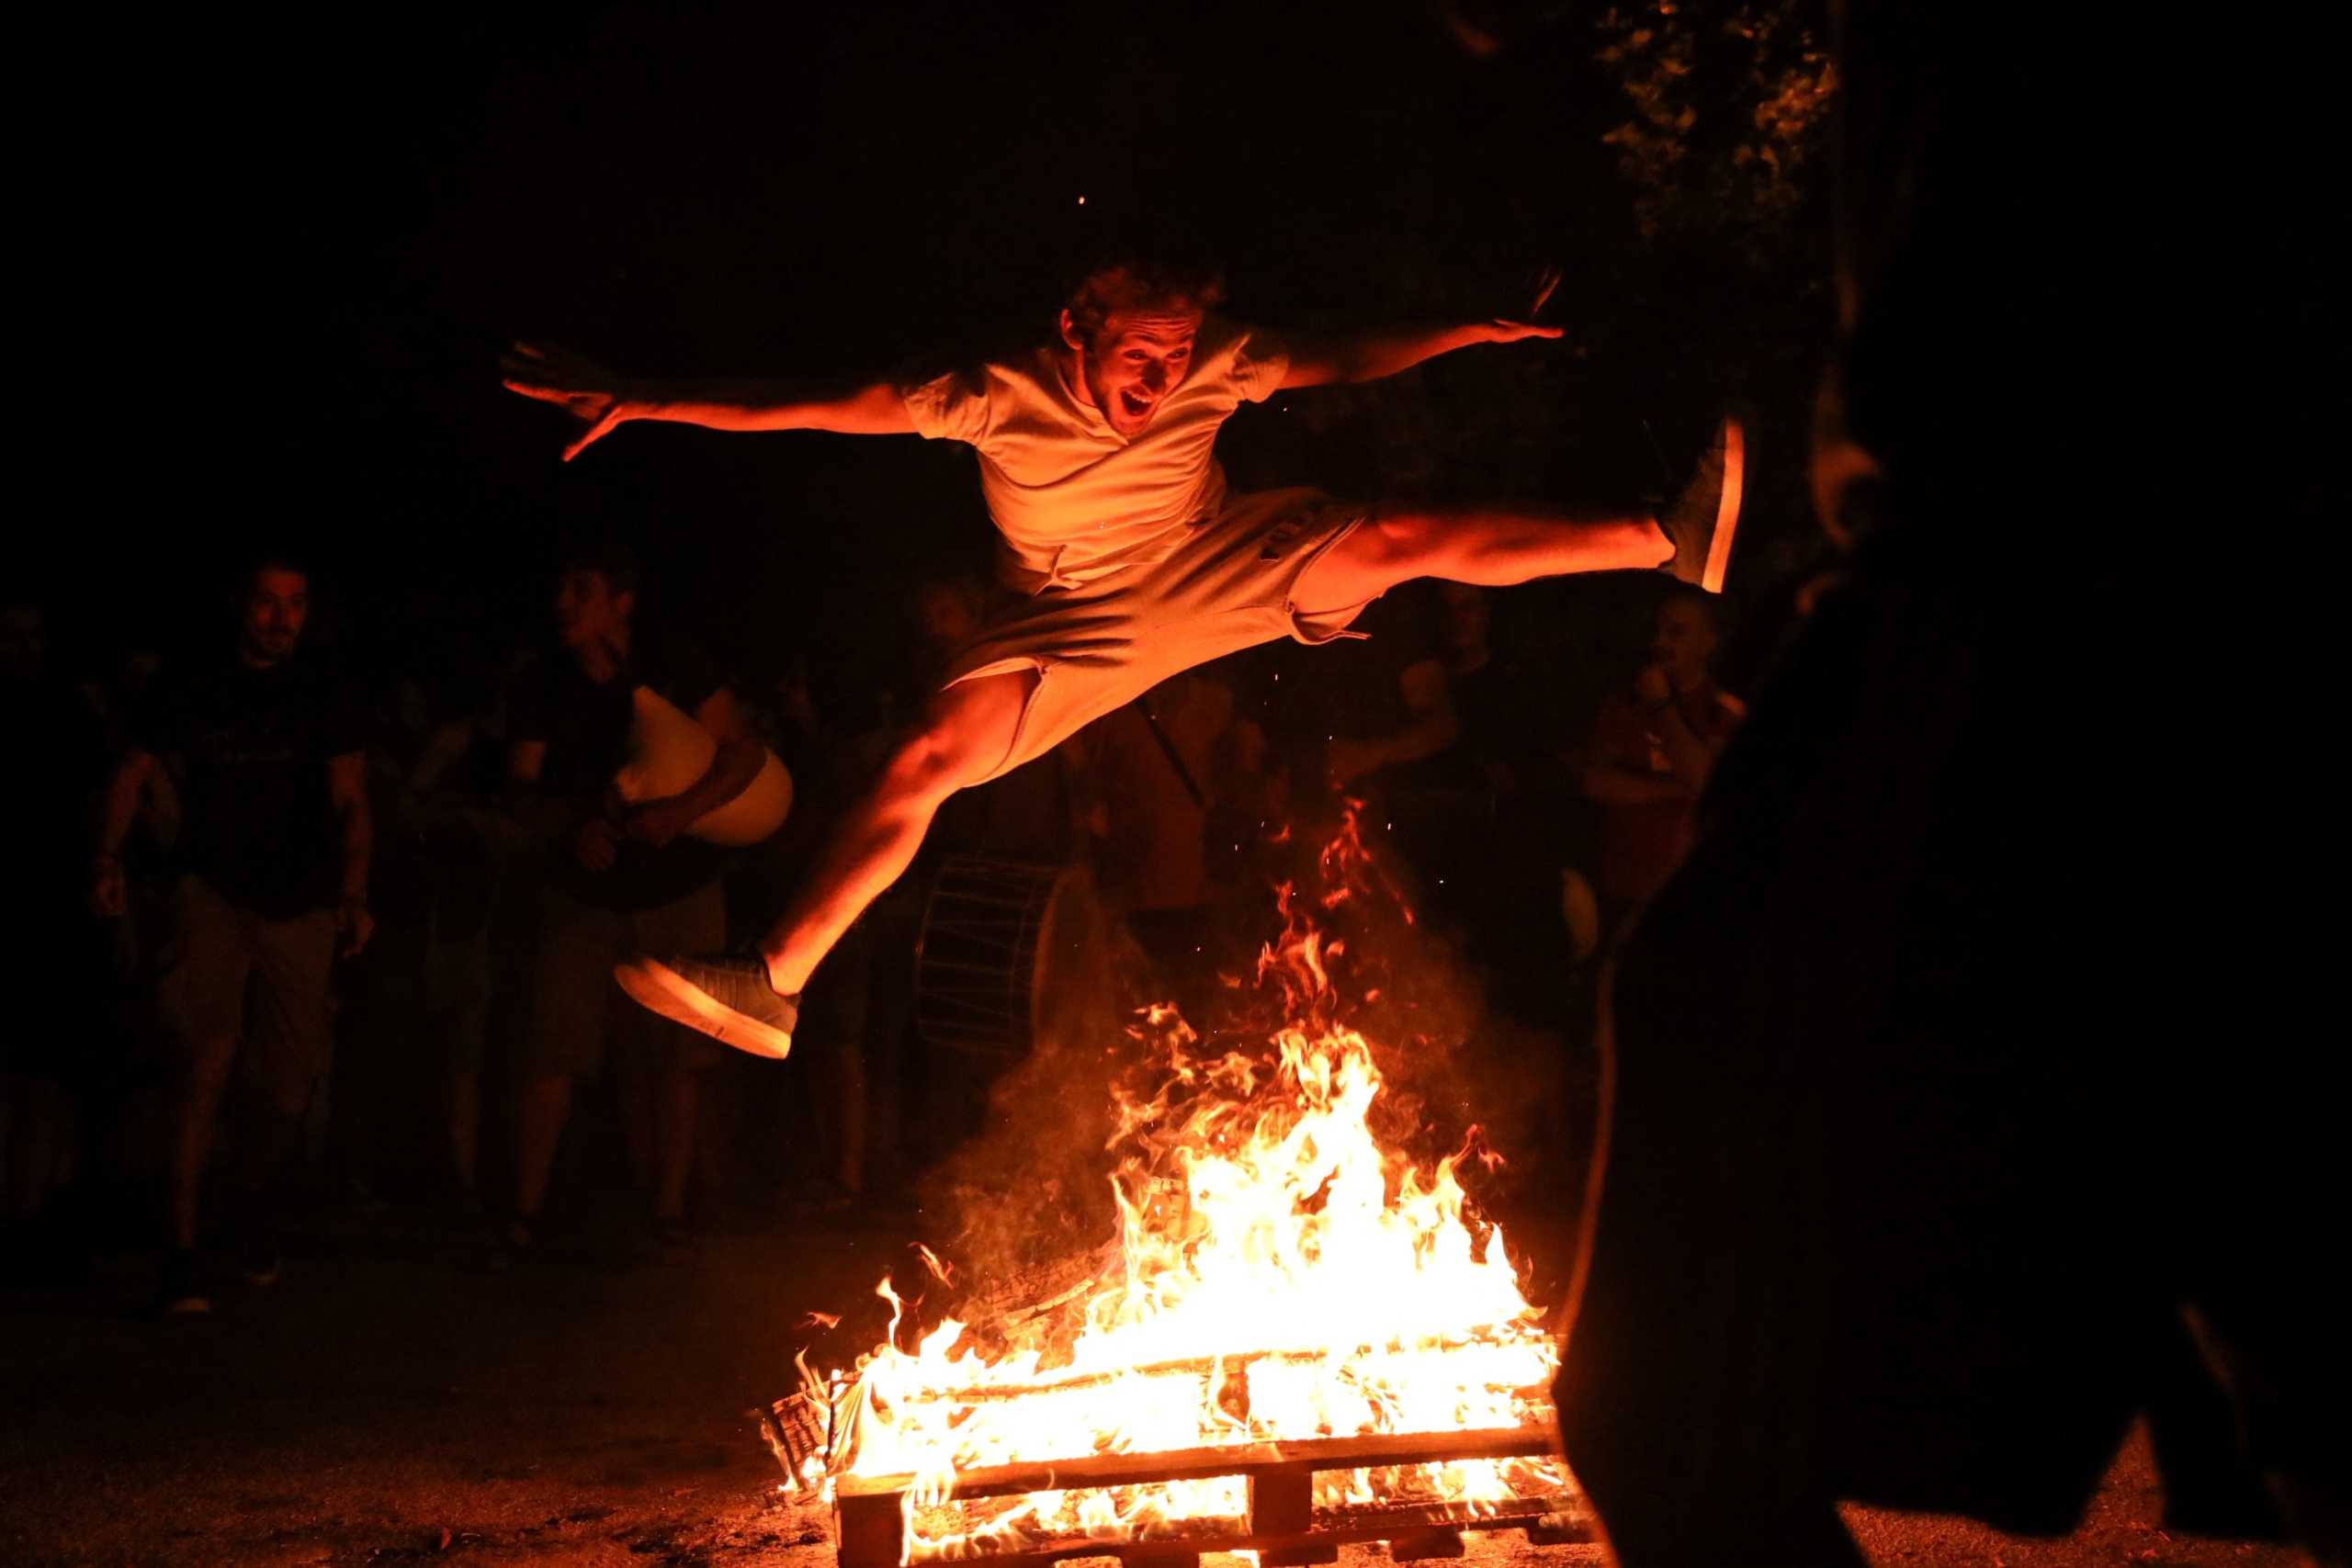 Égő máglyán ugrik át egy férfi a Szent Iván napjának éjszakáján tartott klidonasz ünnepségen Görögországban.